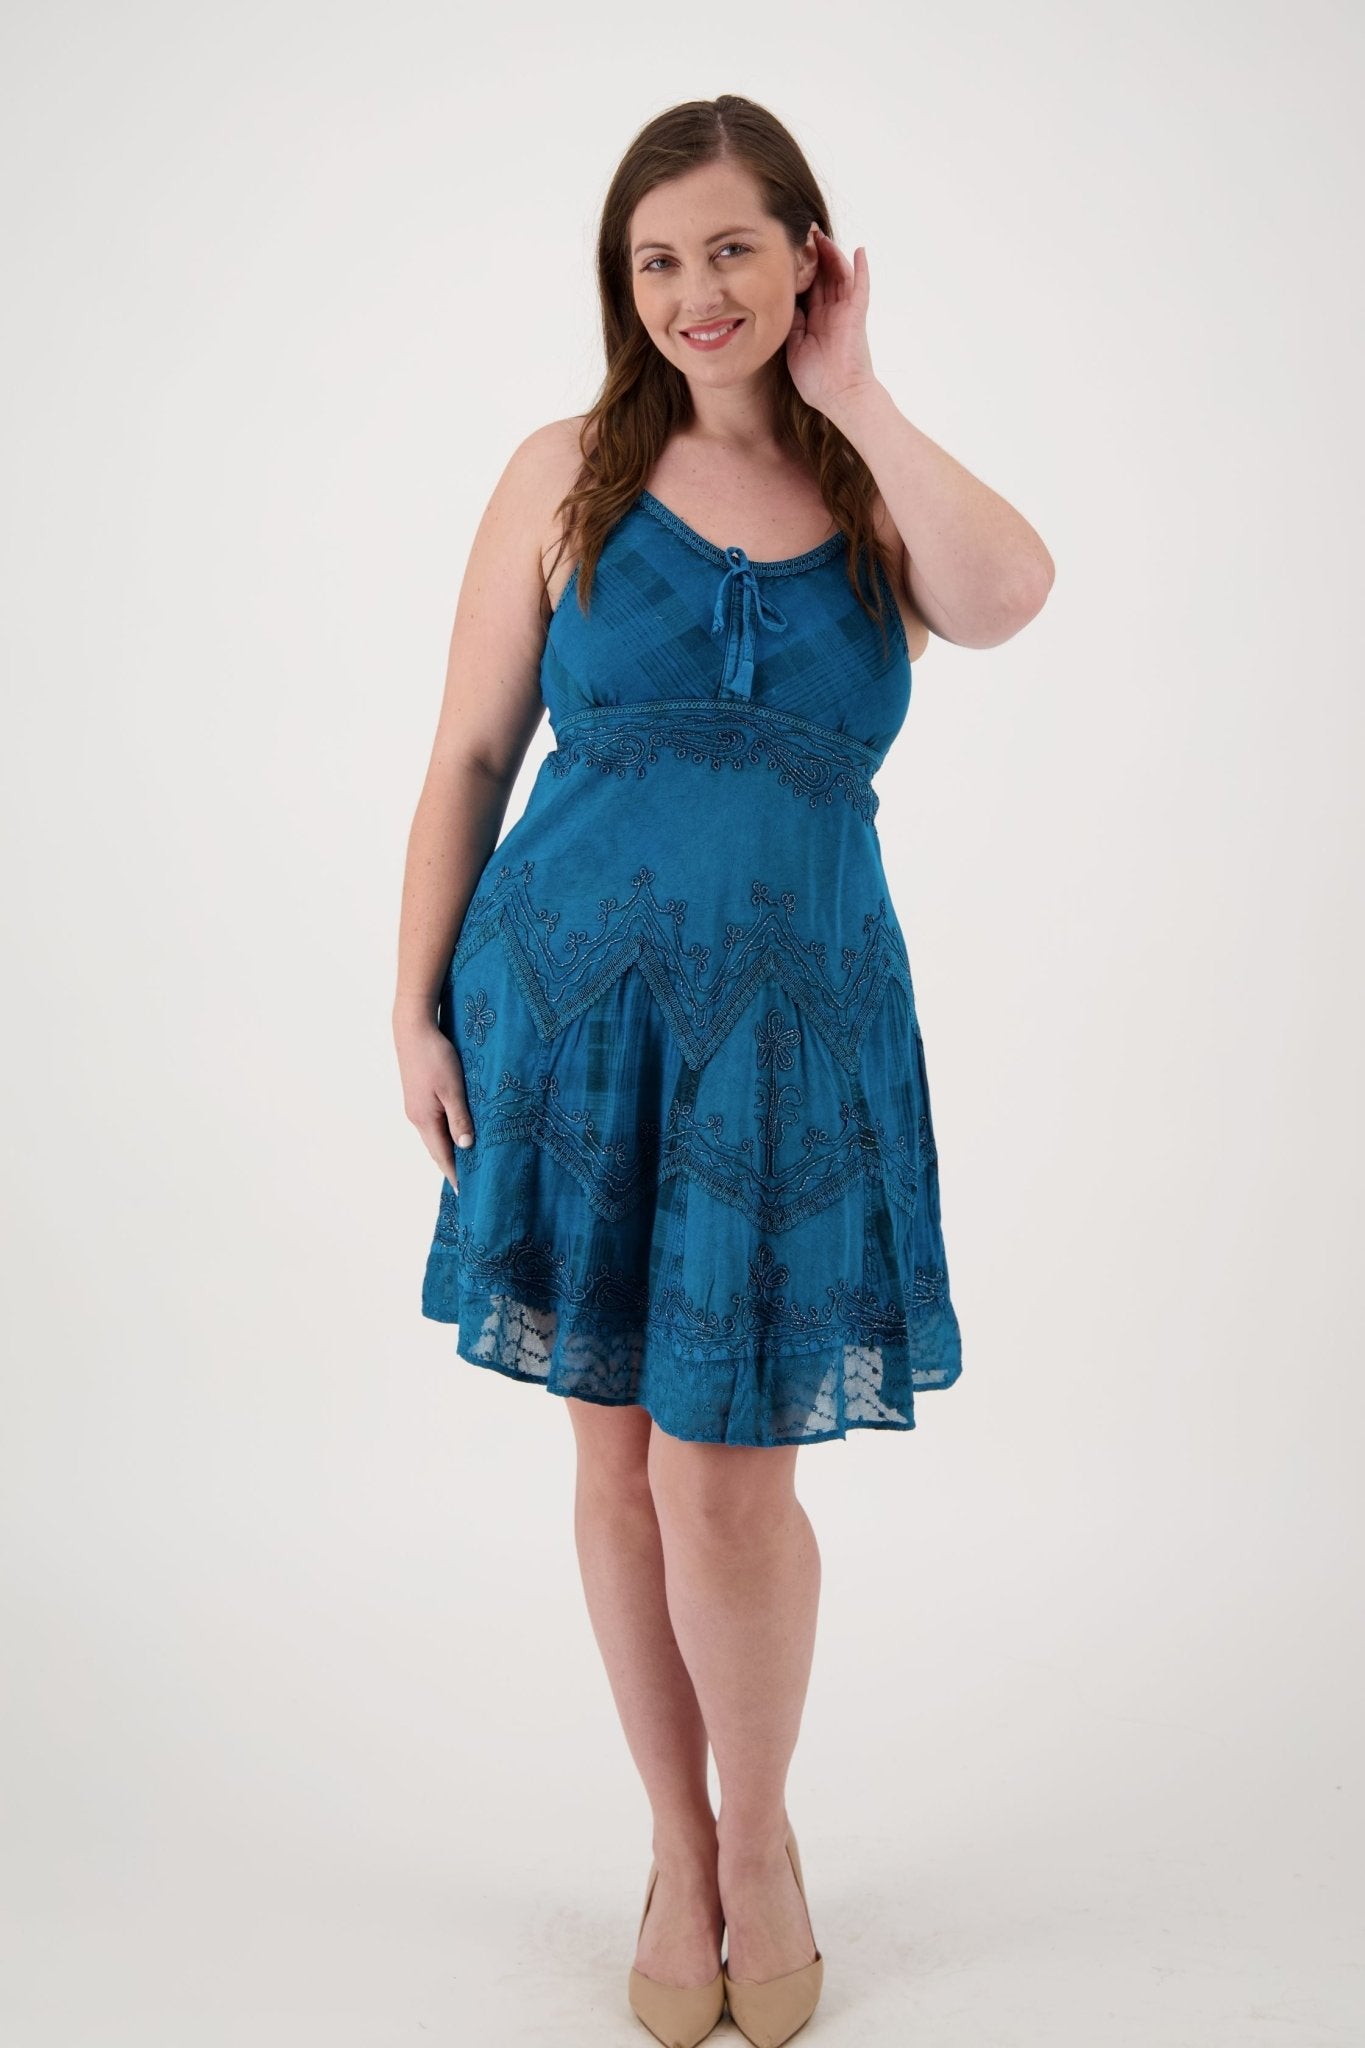 Plaid Panel Mid-Length Renaissance Dress (S/M - L/XL) 7 Colors 151304 - Advance Apparels Inc